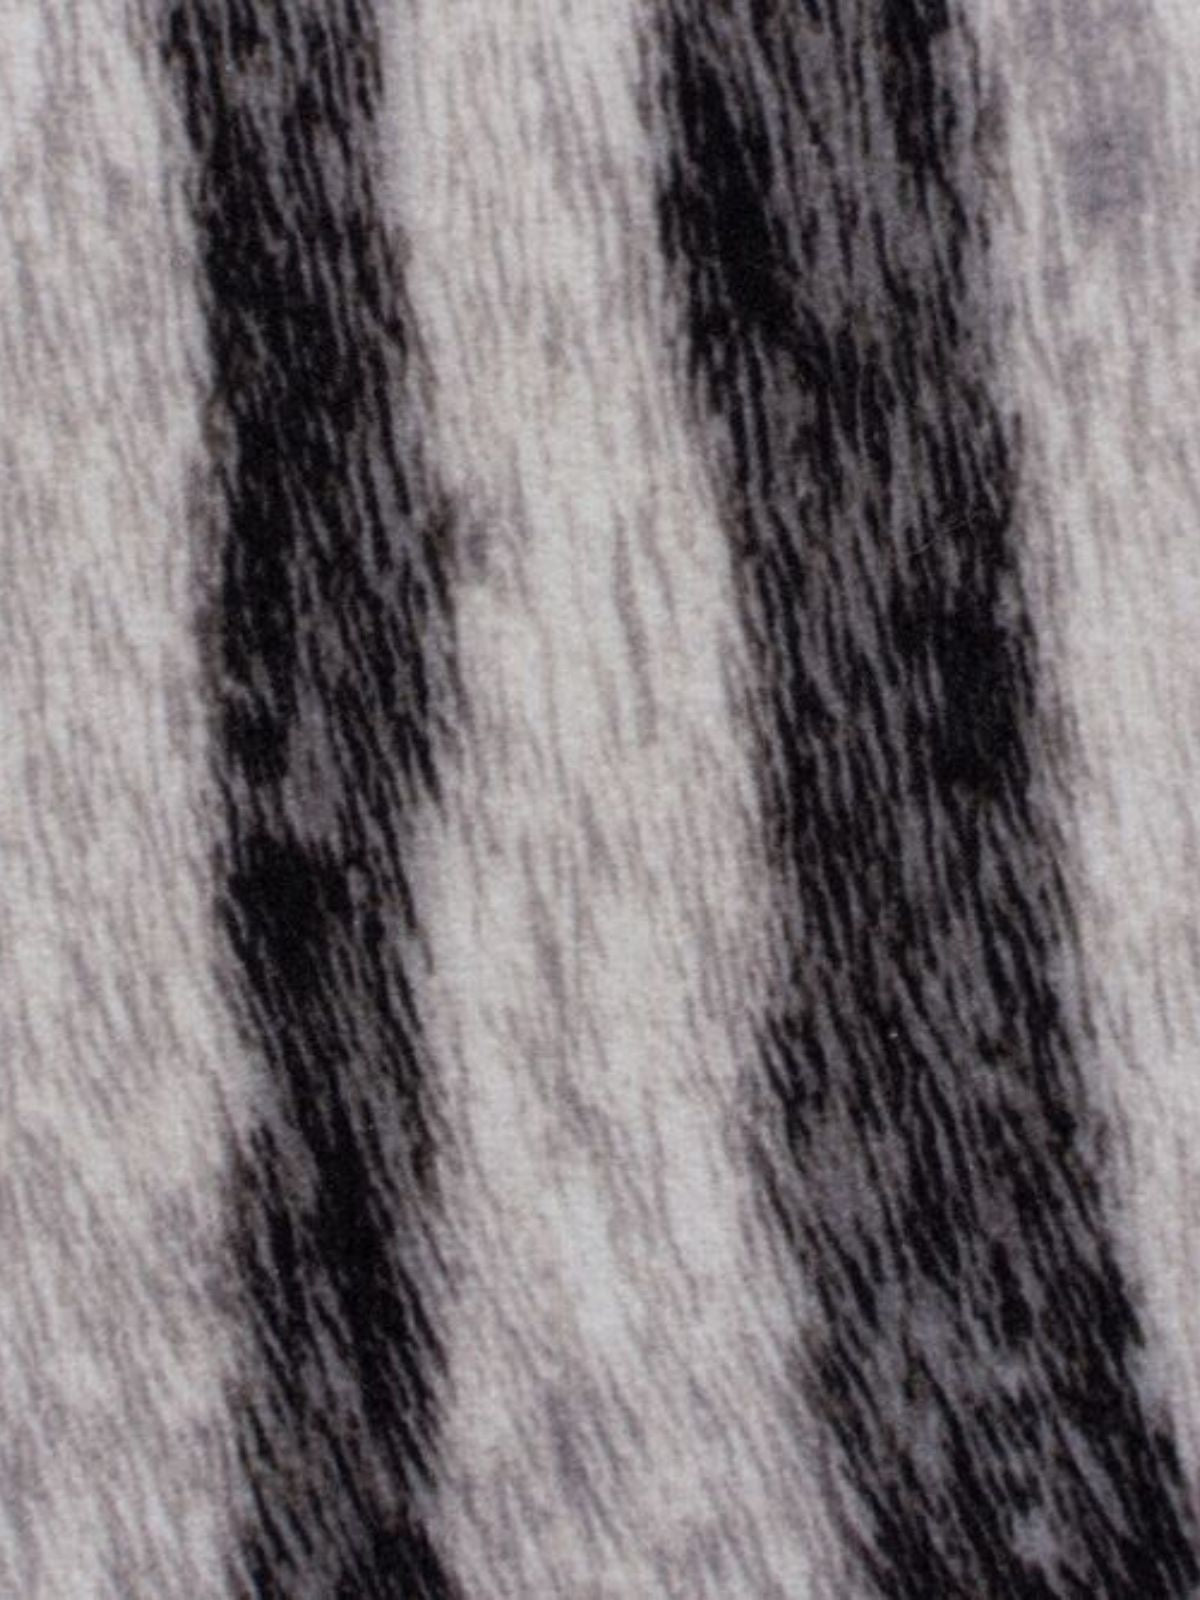 Tappeto animale Zebra Print in poliestere, colore bianco e nero 155x195 cm.-4